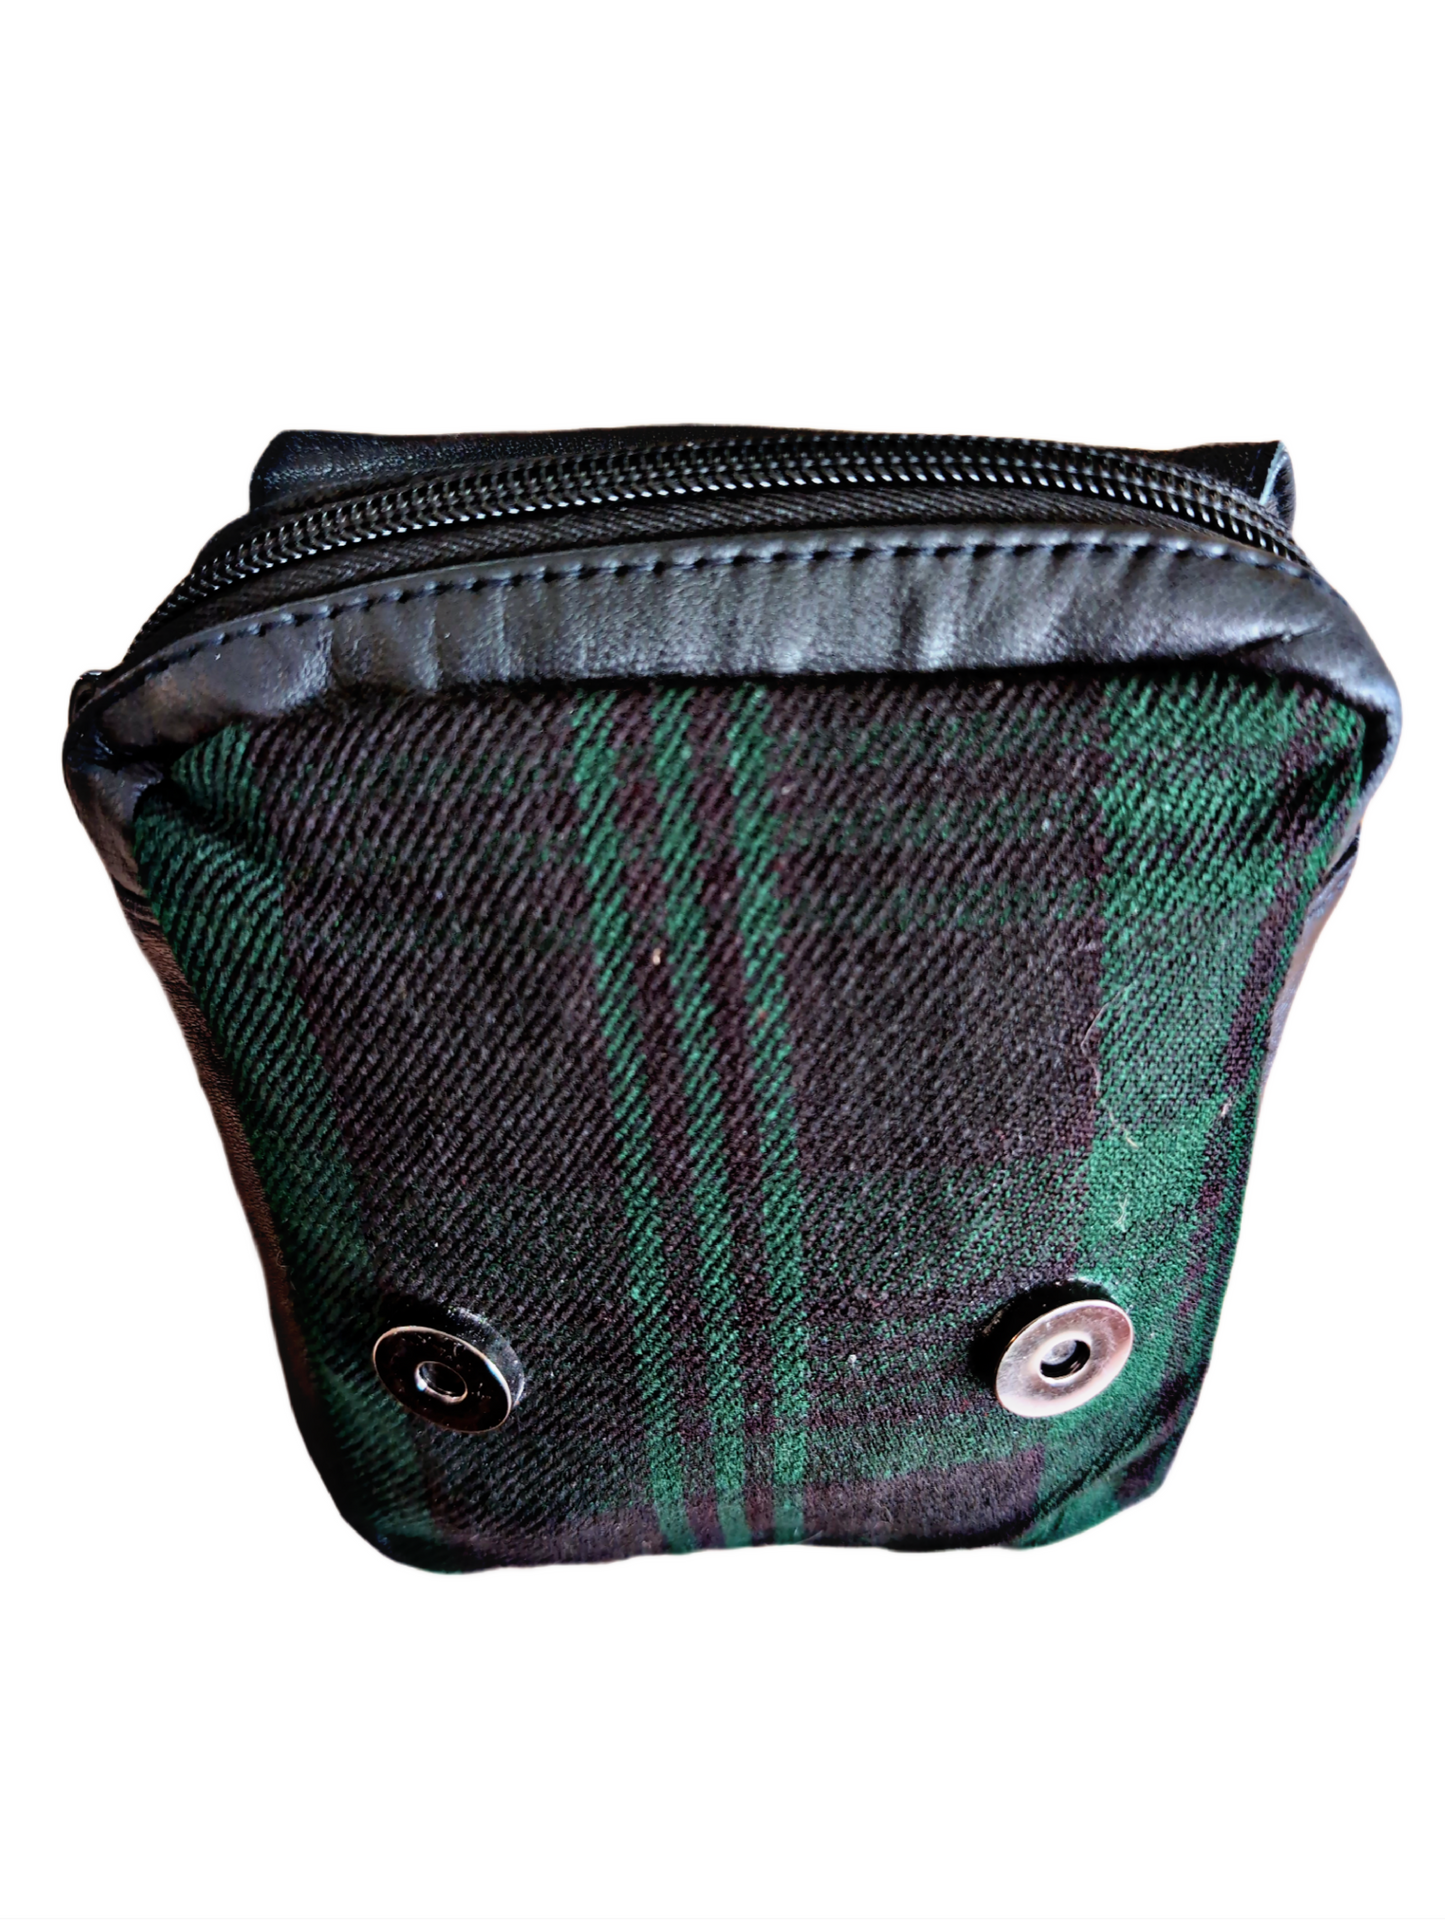 Kilttasche passend zu unseren Kilten - Echtleder - Halle15 Totenkopf Logo - Irish Green